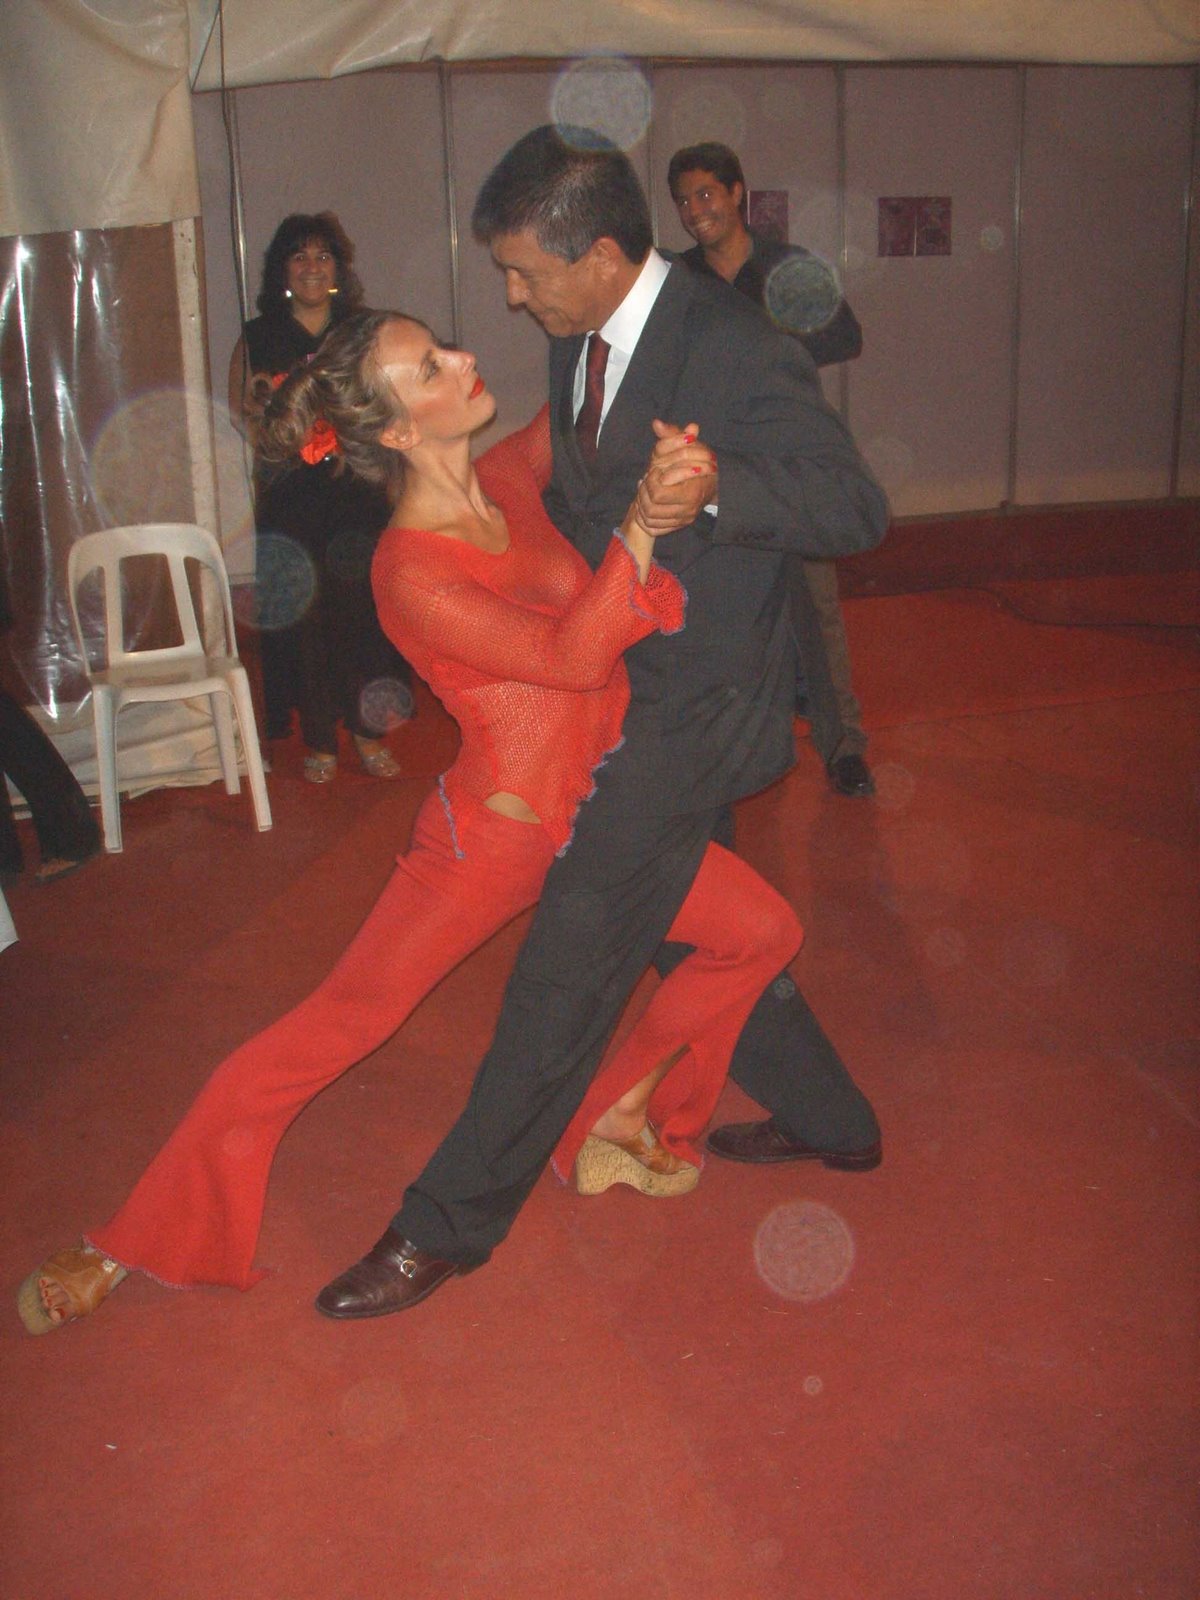 [Justo+Daract-+con+intendente+pose+de+tango.jpg]